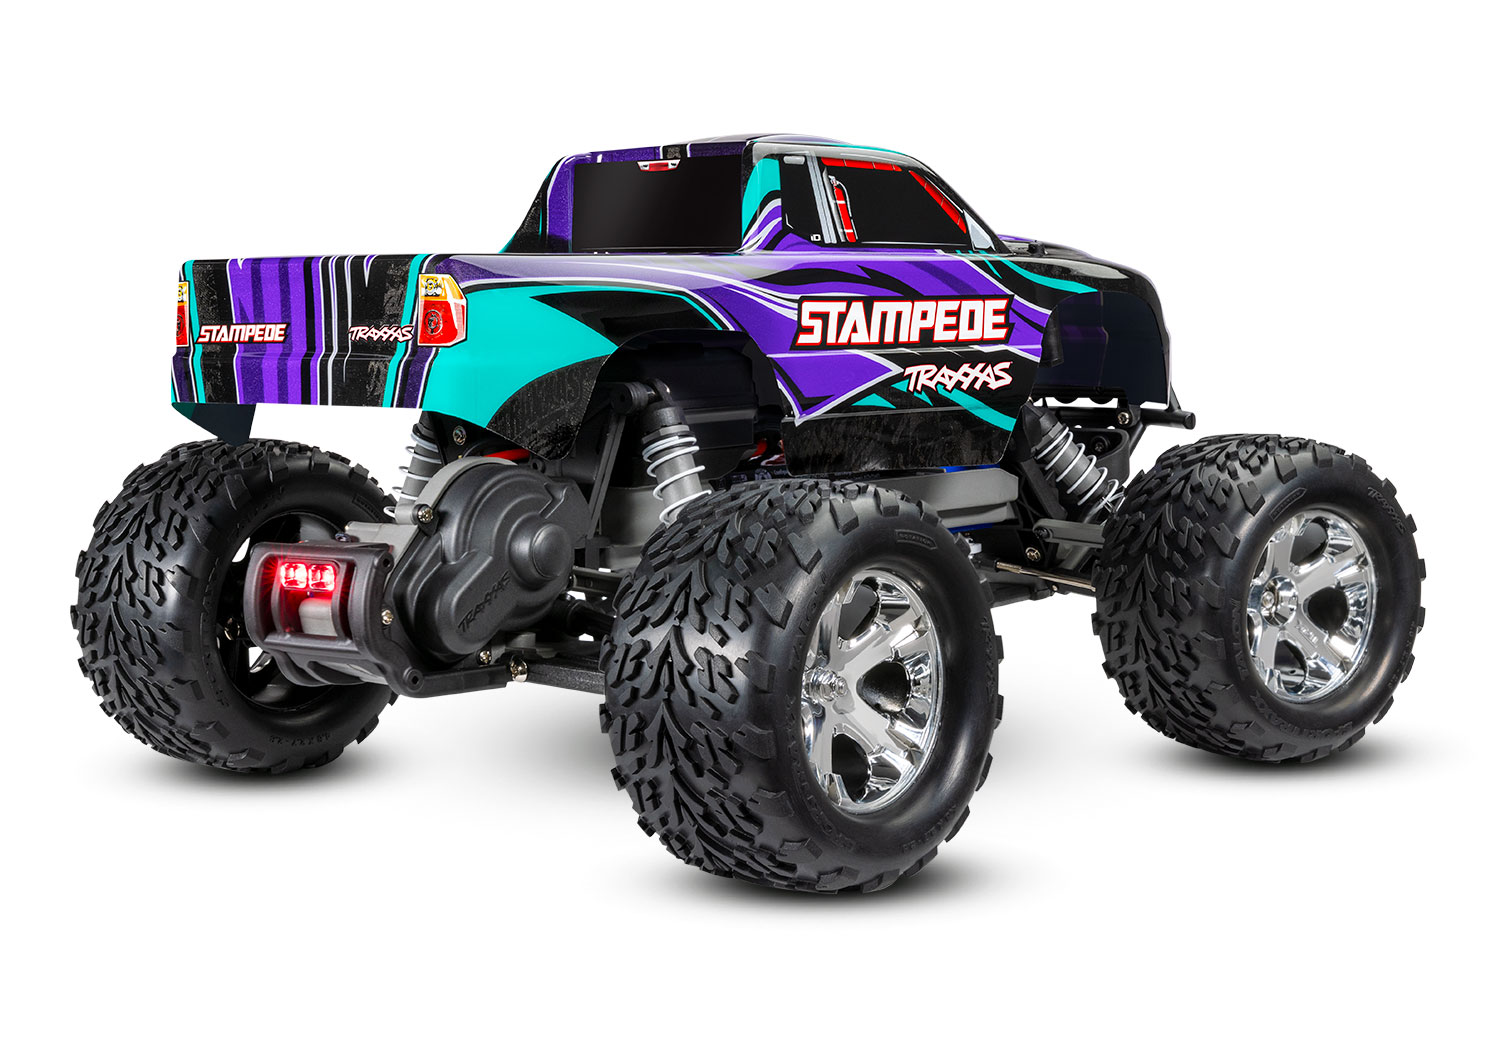 traxxas-36054-61-PRPL-2-Stampede-violett-Monstertruggy-ferngesteuertes-Geländeauto-Heckleuchten